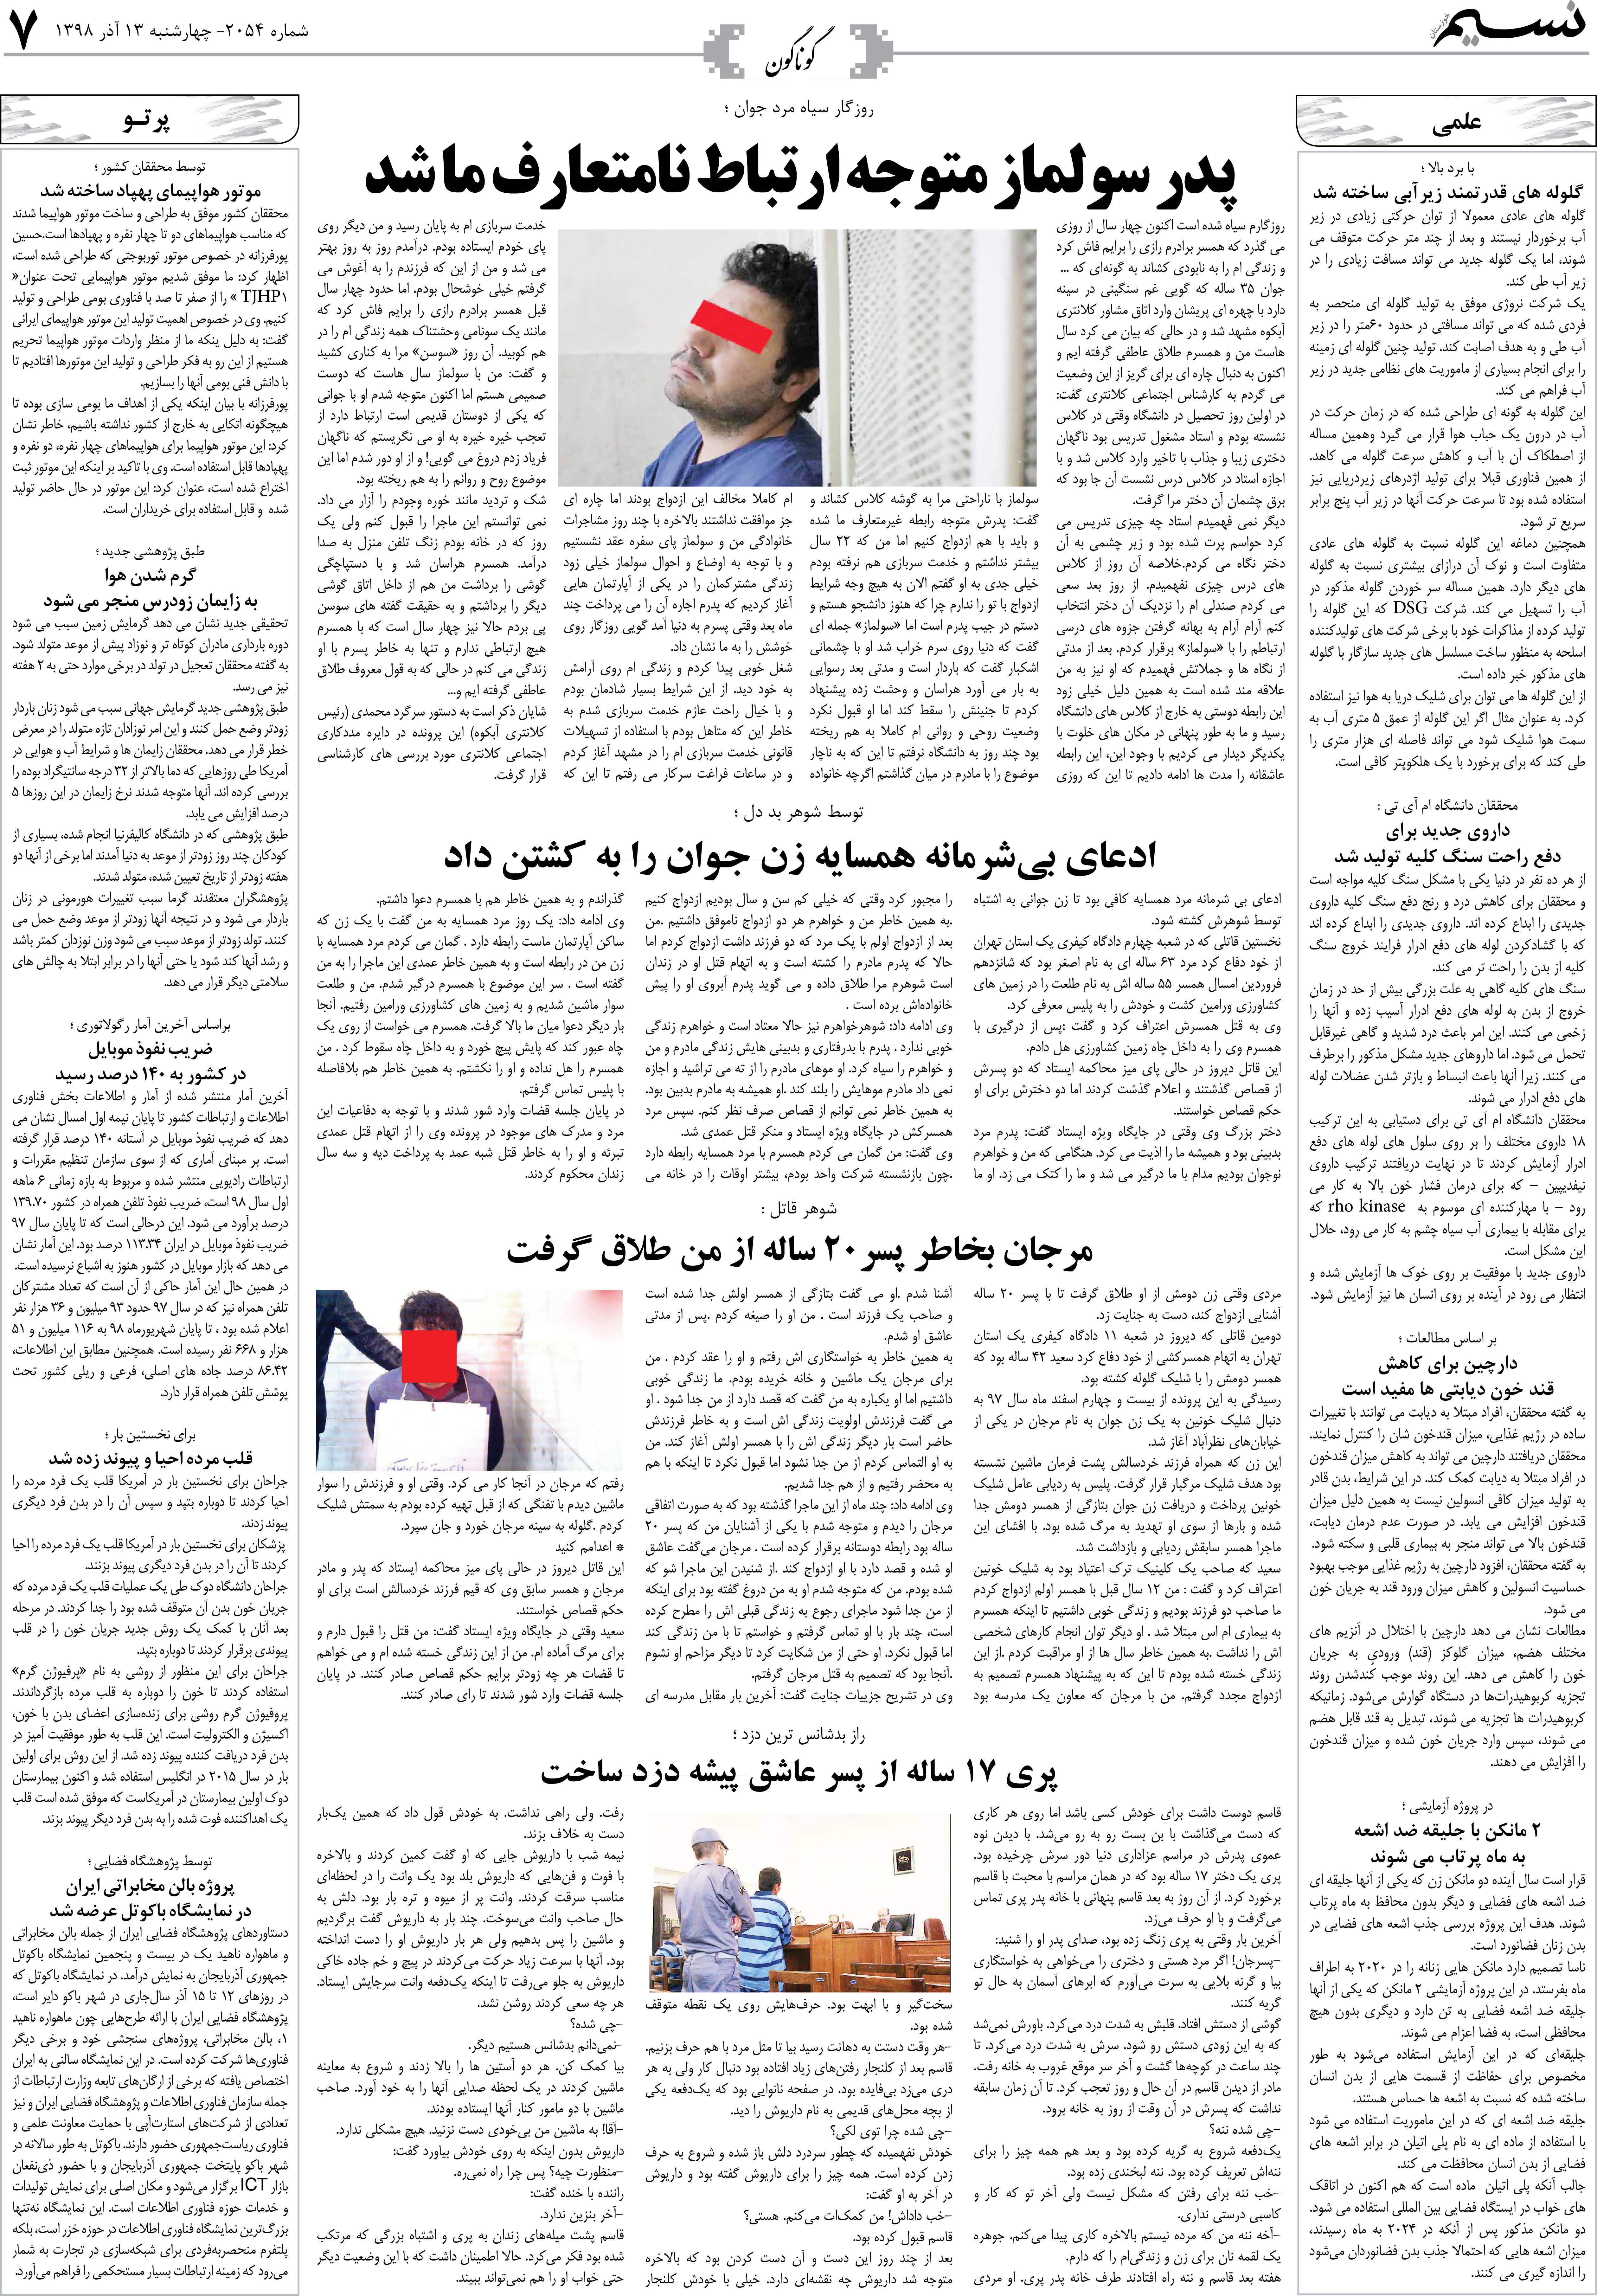 صفحه گوناگون روزنامه نسیم شماره 2054